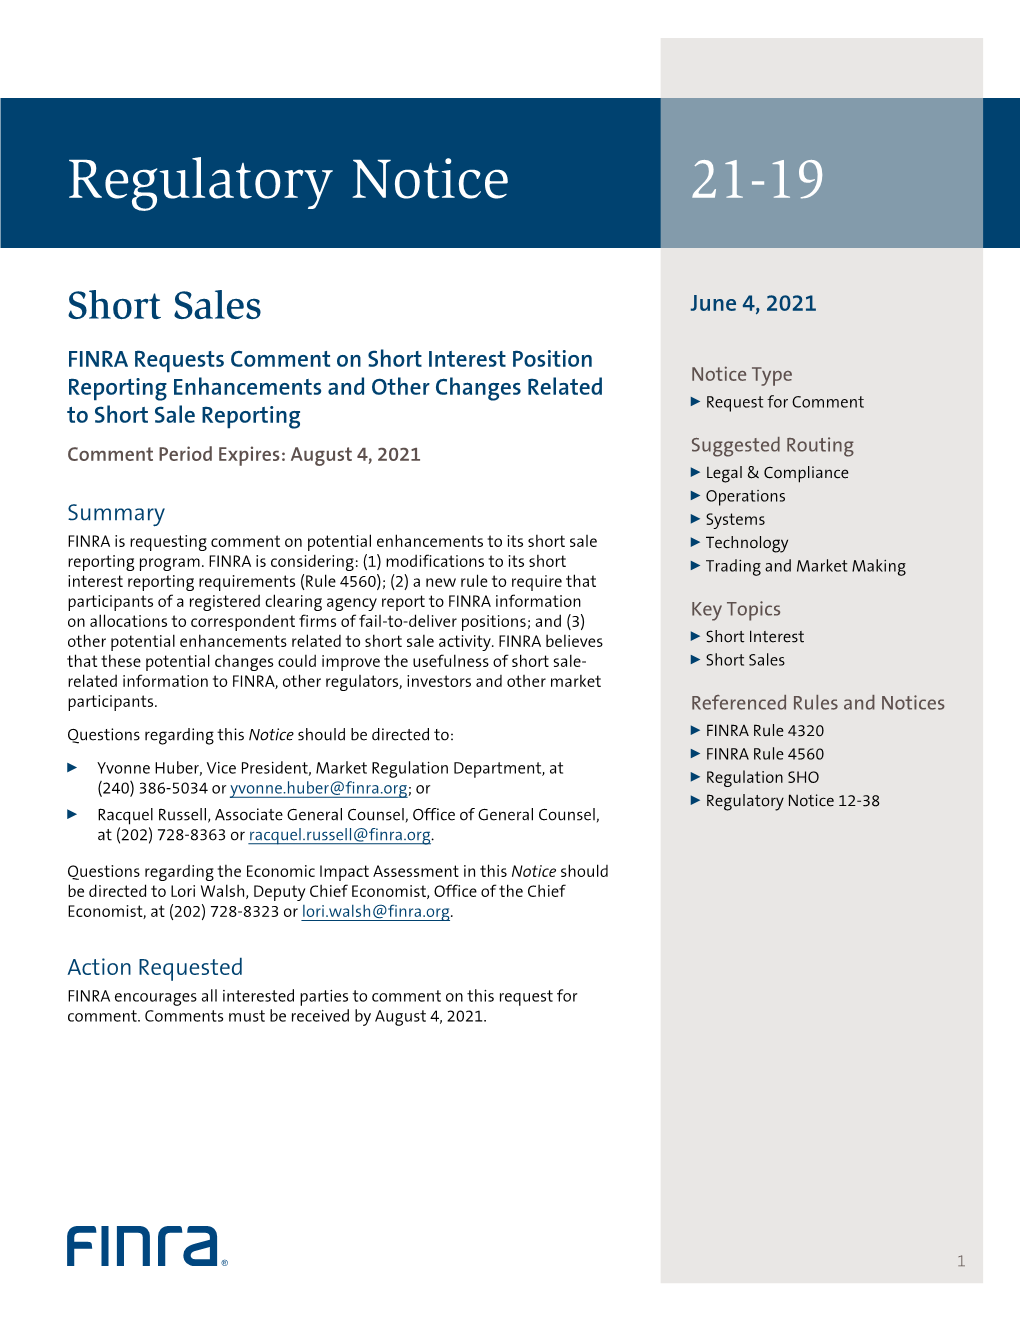 Regulatory Notice 21-19